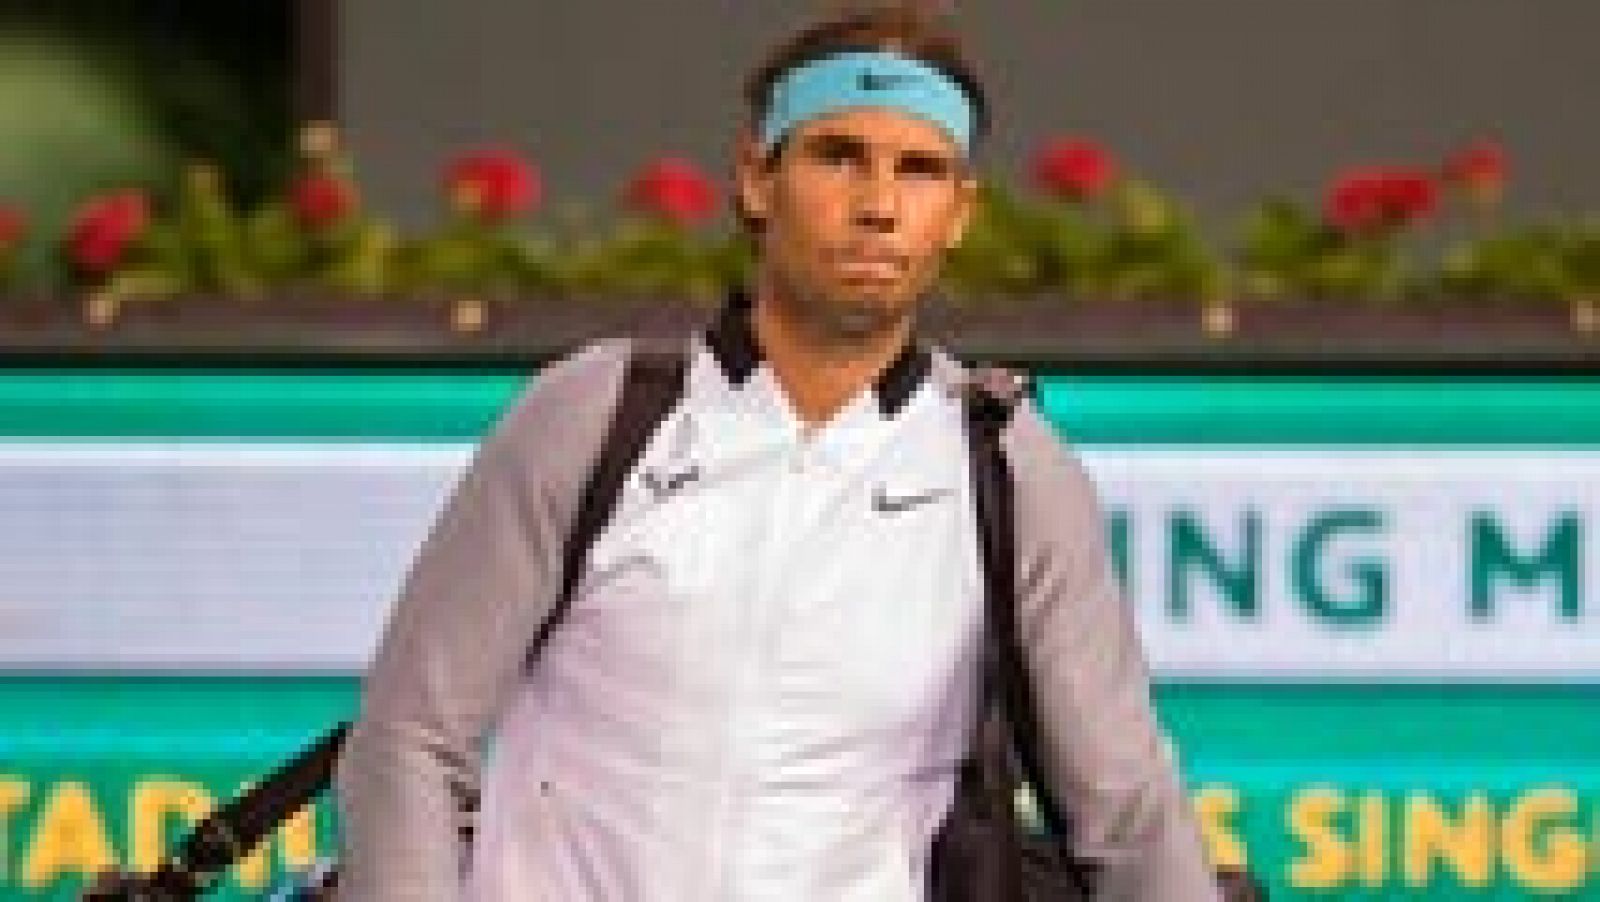 El español Rafael Nadal declaró tras su victoria ante el luxemburgués Gilles Muller en la segunda ronda del torneo de tenis de Indian Wells que denunciará a la exministra francesa de Deportes Roselyne Bachelot, quien lo acusó de dopaje, y "a todo aquel que comente algo similar en el futuro".